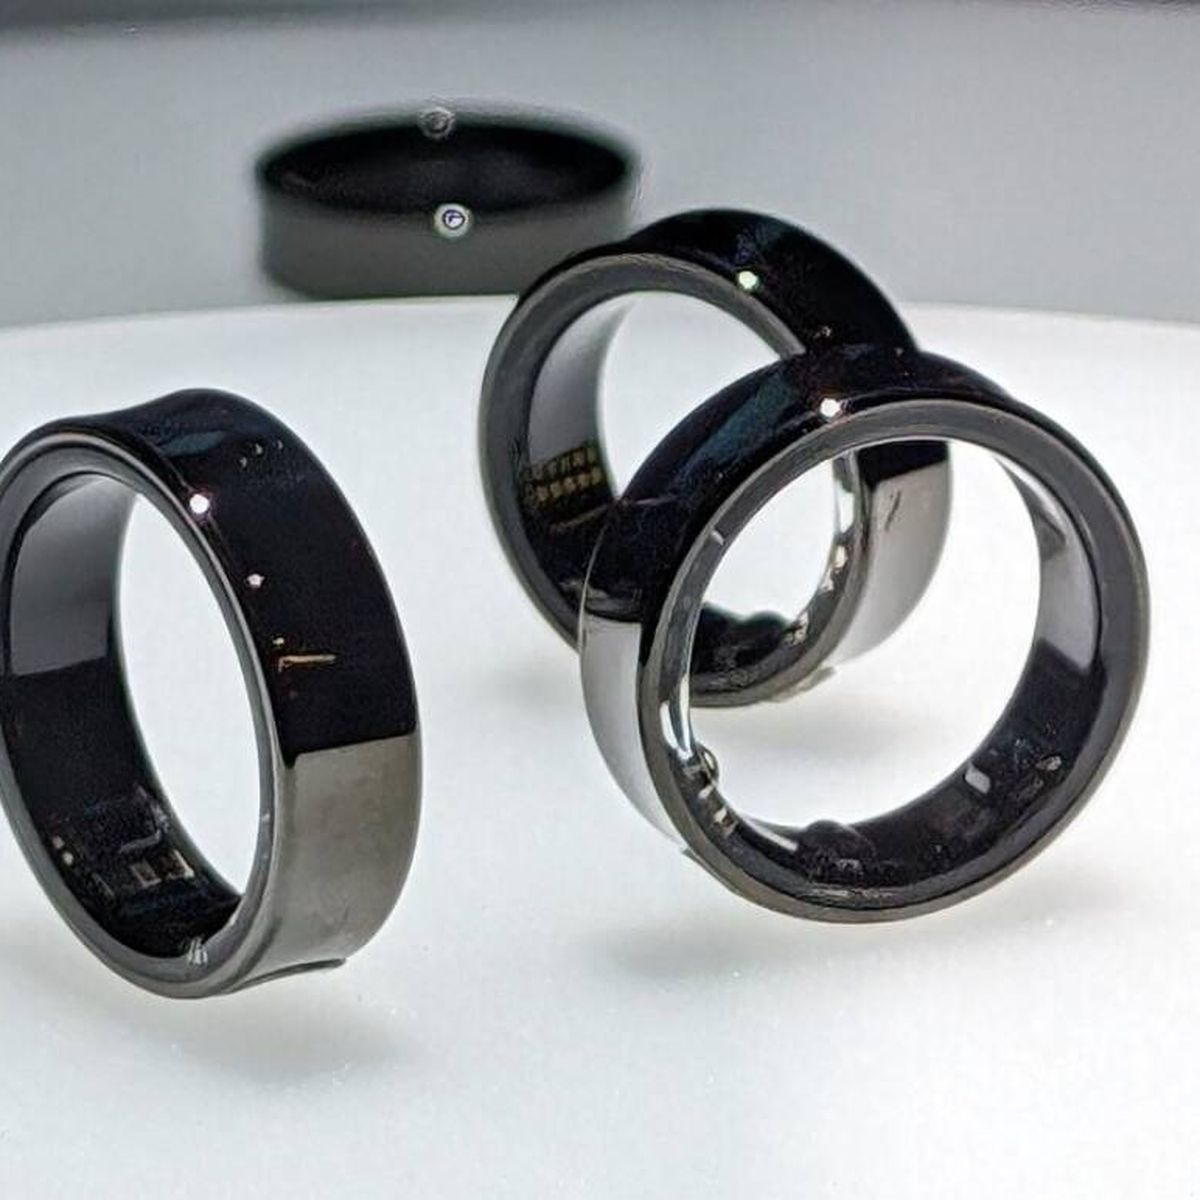 Samsung confirma el diseño del Galaxy Ring y revela nuevos detalles de su anillo  inteligente